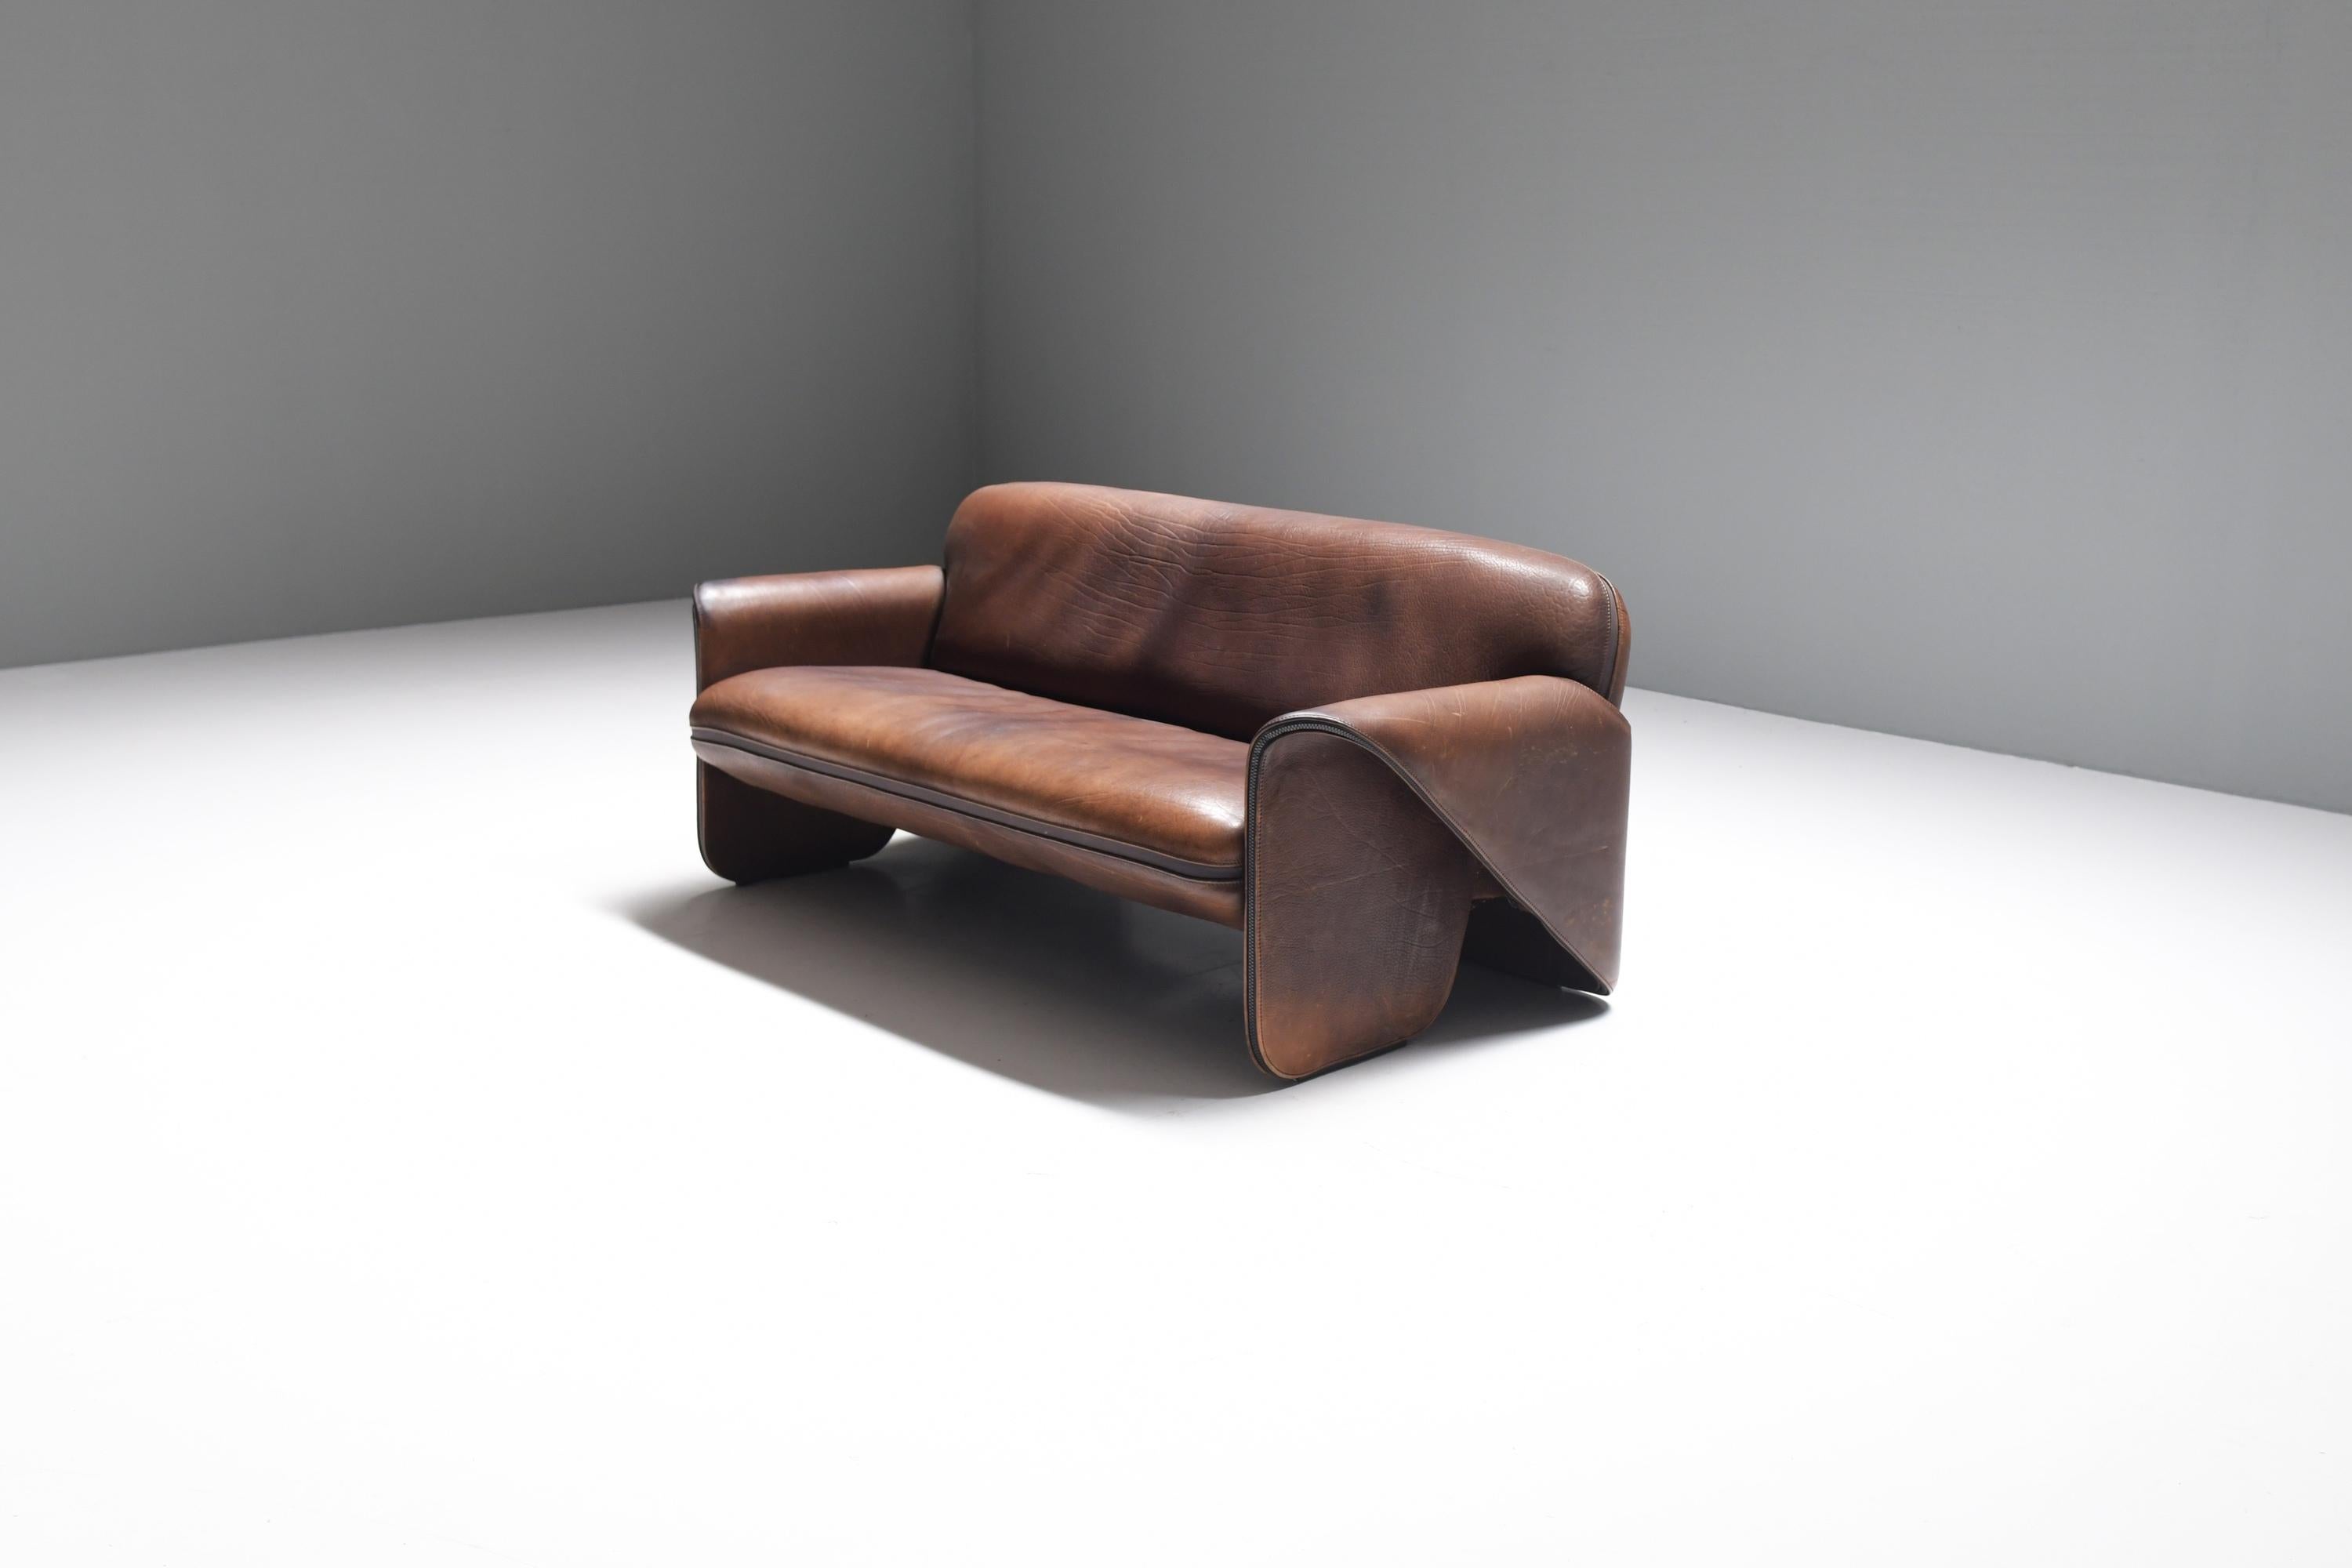 Stilvolles DS-125 Sofa in seinem originalen dicken braunen Büffelleder! Was für eine Patina!
Entworfen von Gerd Lange für De Sede im Jahr 1970

Das skulpturale Design in Kombination mit dem hochwertigen Leder verleiht dem Sofa ein sehr königliches